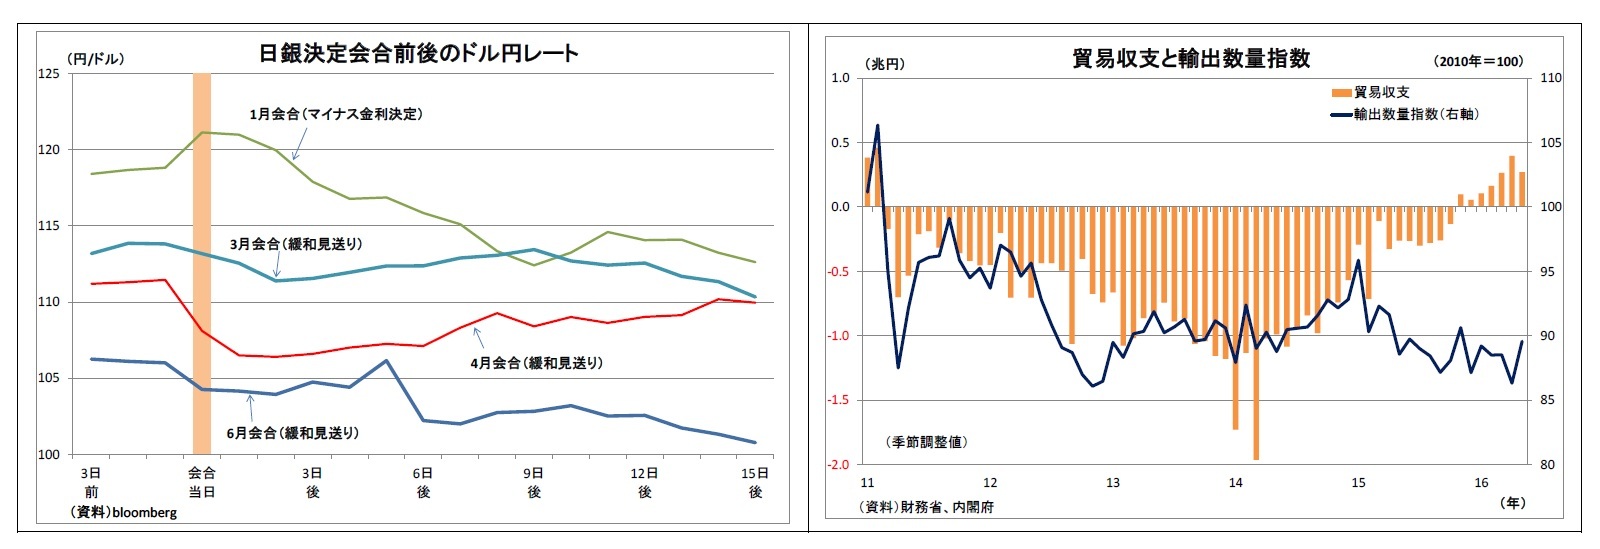 日銀決定会合前後のドル円レート/貿易収支と輸出数量指数